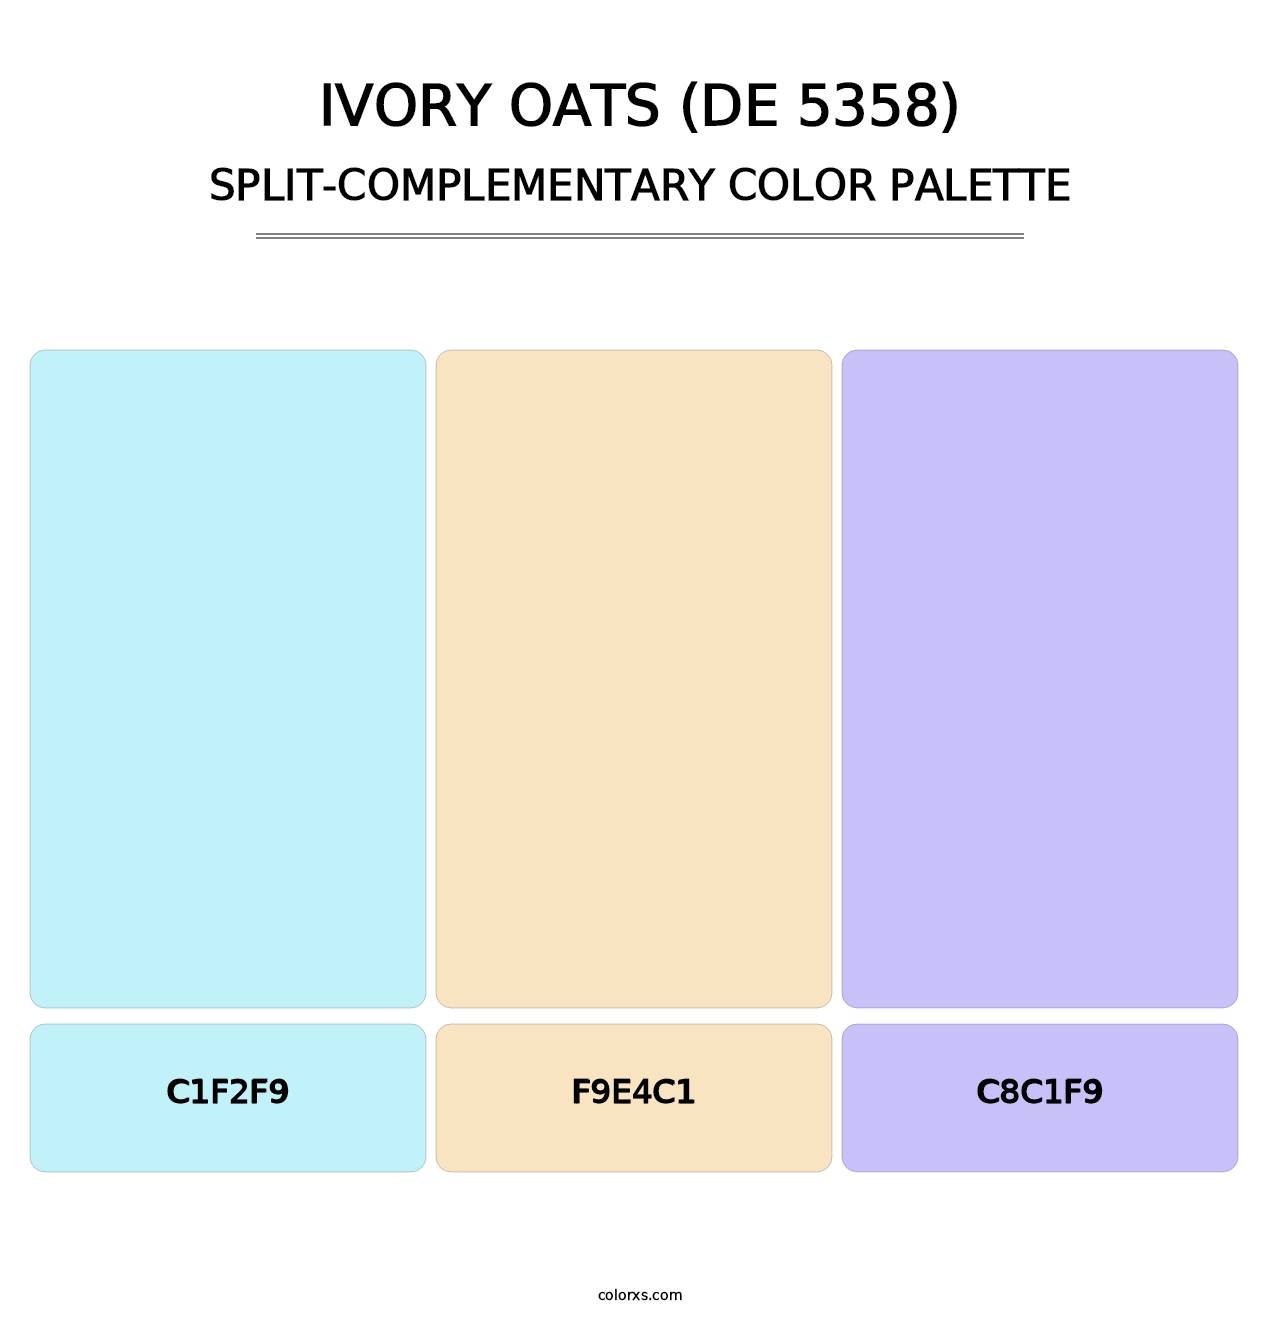 Ivory Oats (DE 5358) - Split-Complementary Color Palette